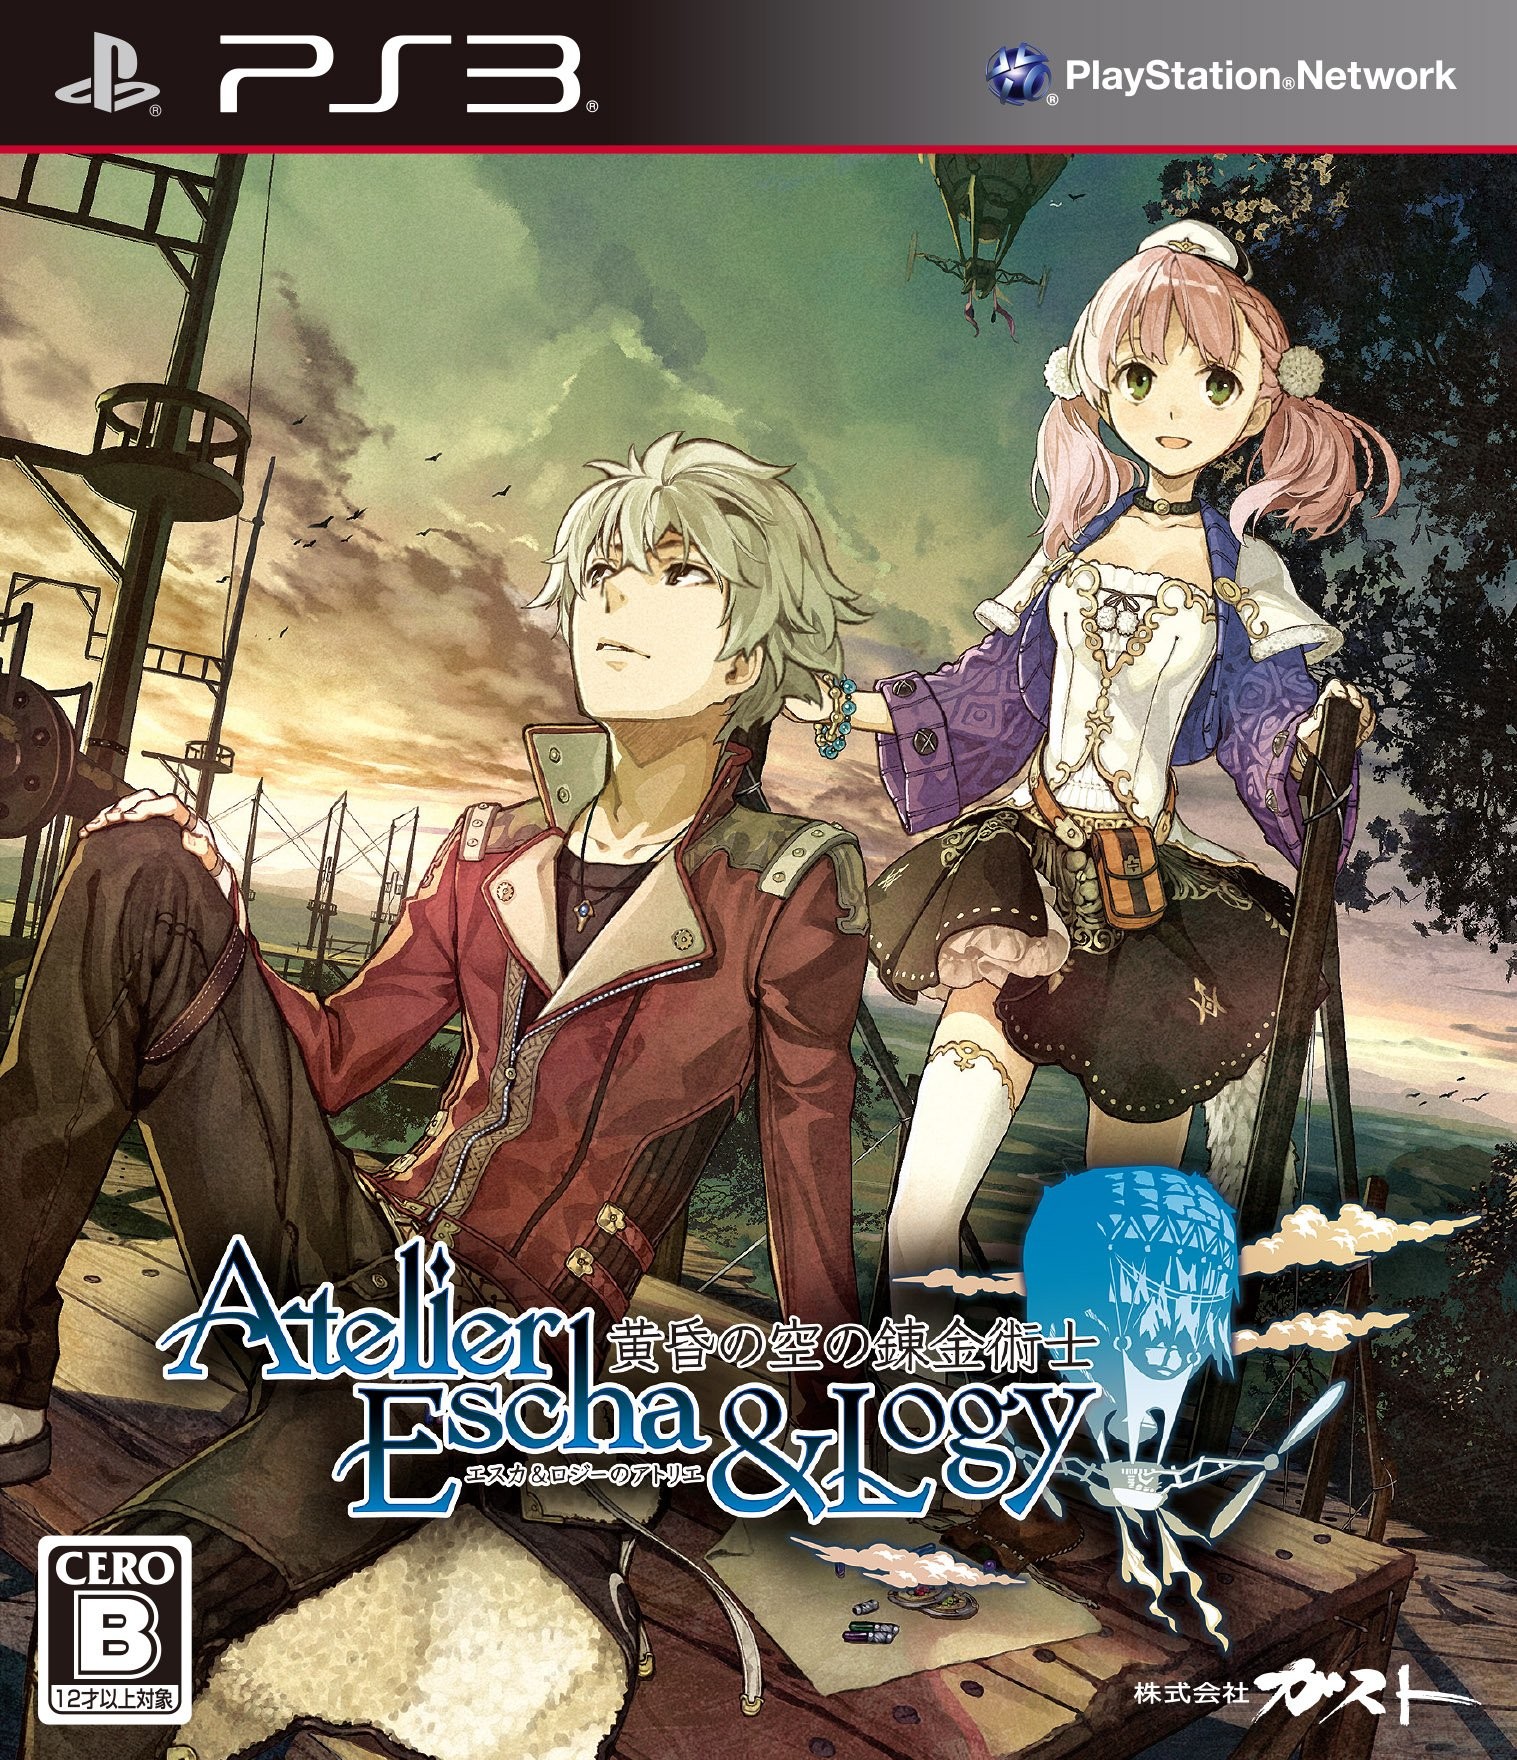 PlayStation 3 JP - Atelier Escha & Logy- Alchemists of the Dusk Sky.jpg